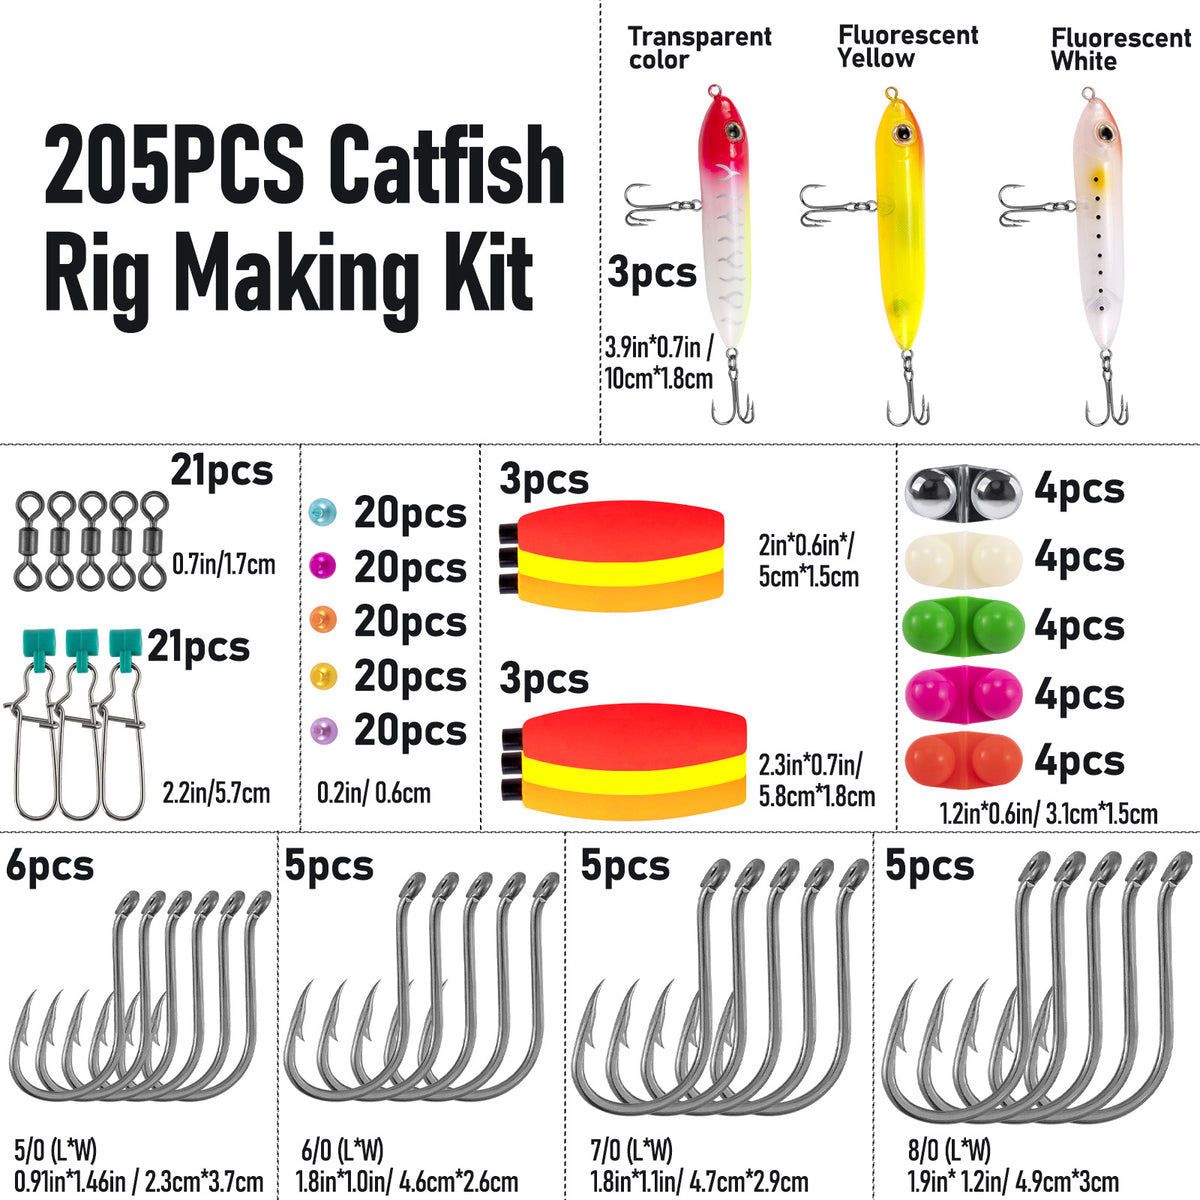 Dr.Fish 205pcs Catfish Rig Tackle Making Kit